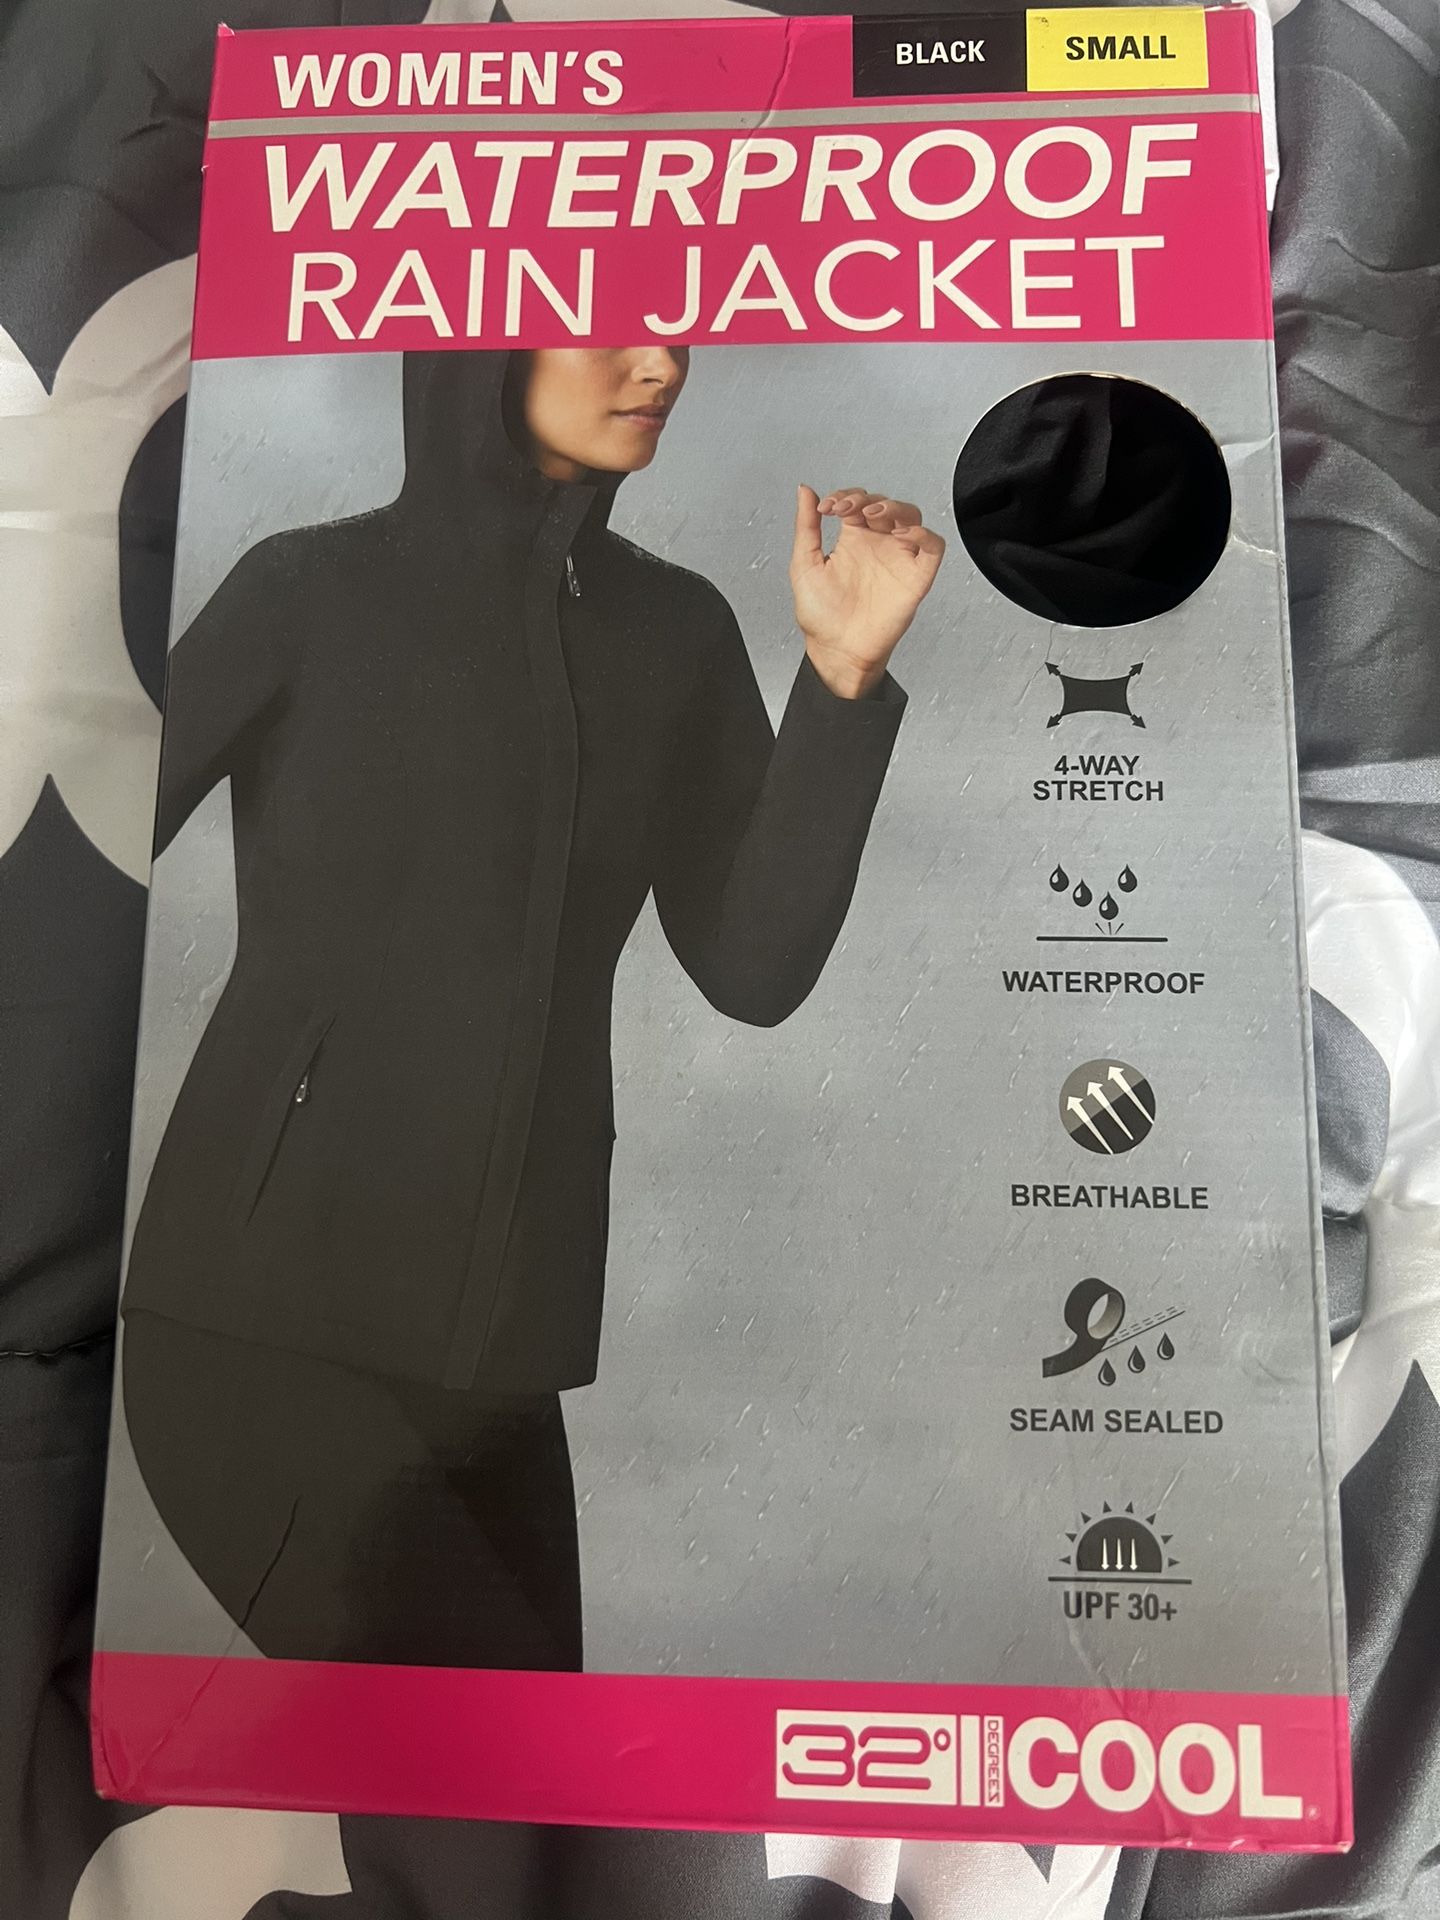 Rain Jacket. Waterproof: 6 Dlls 